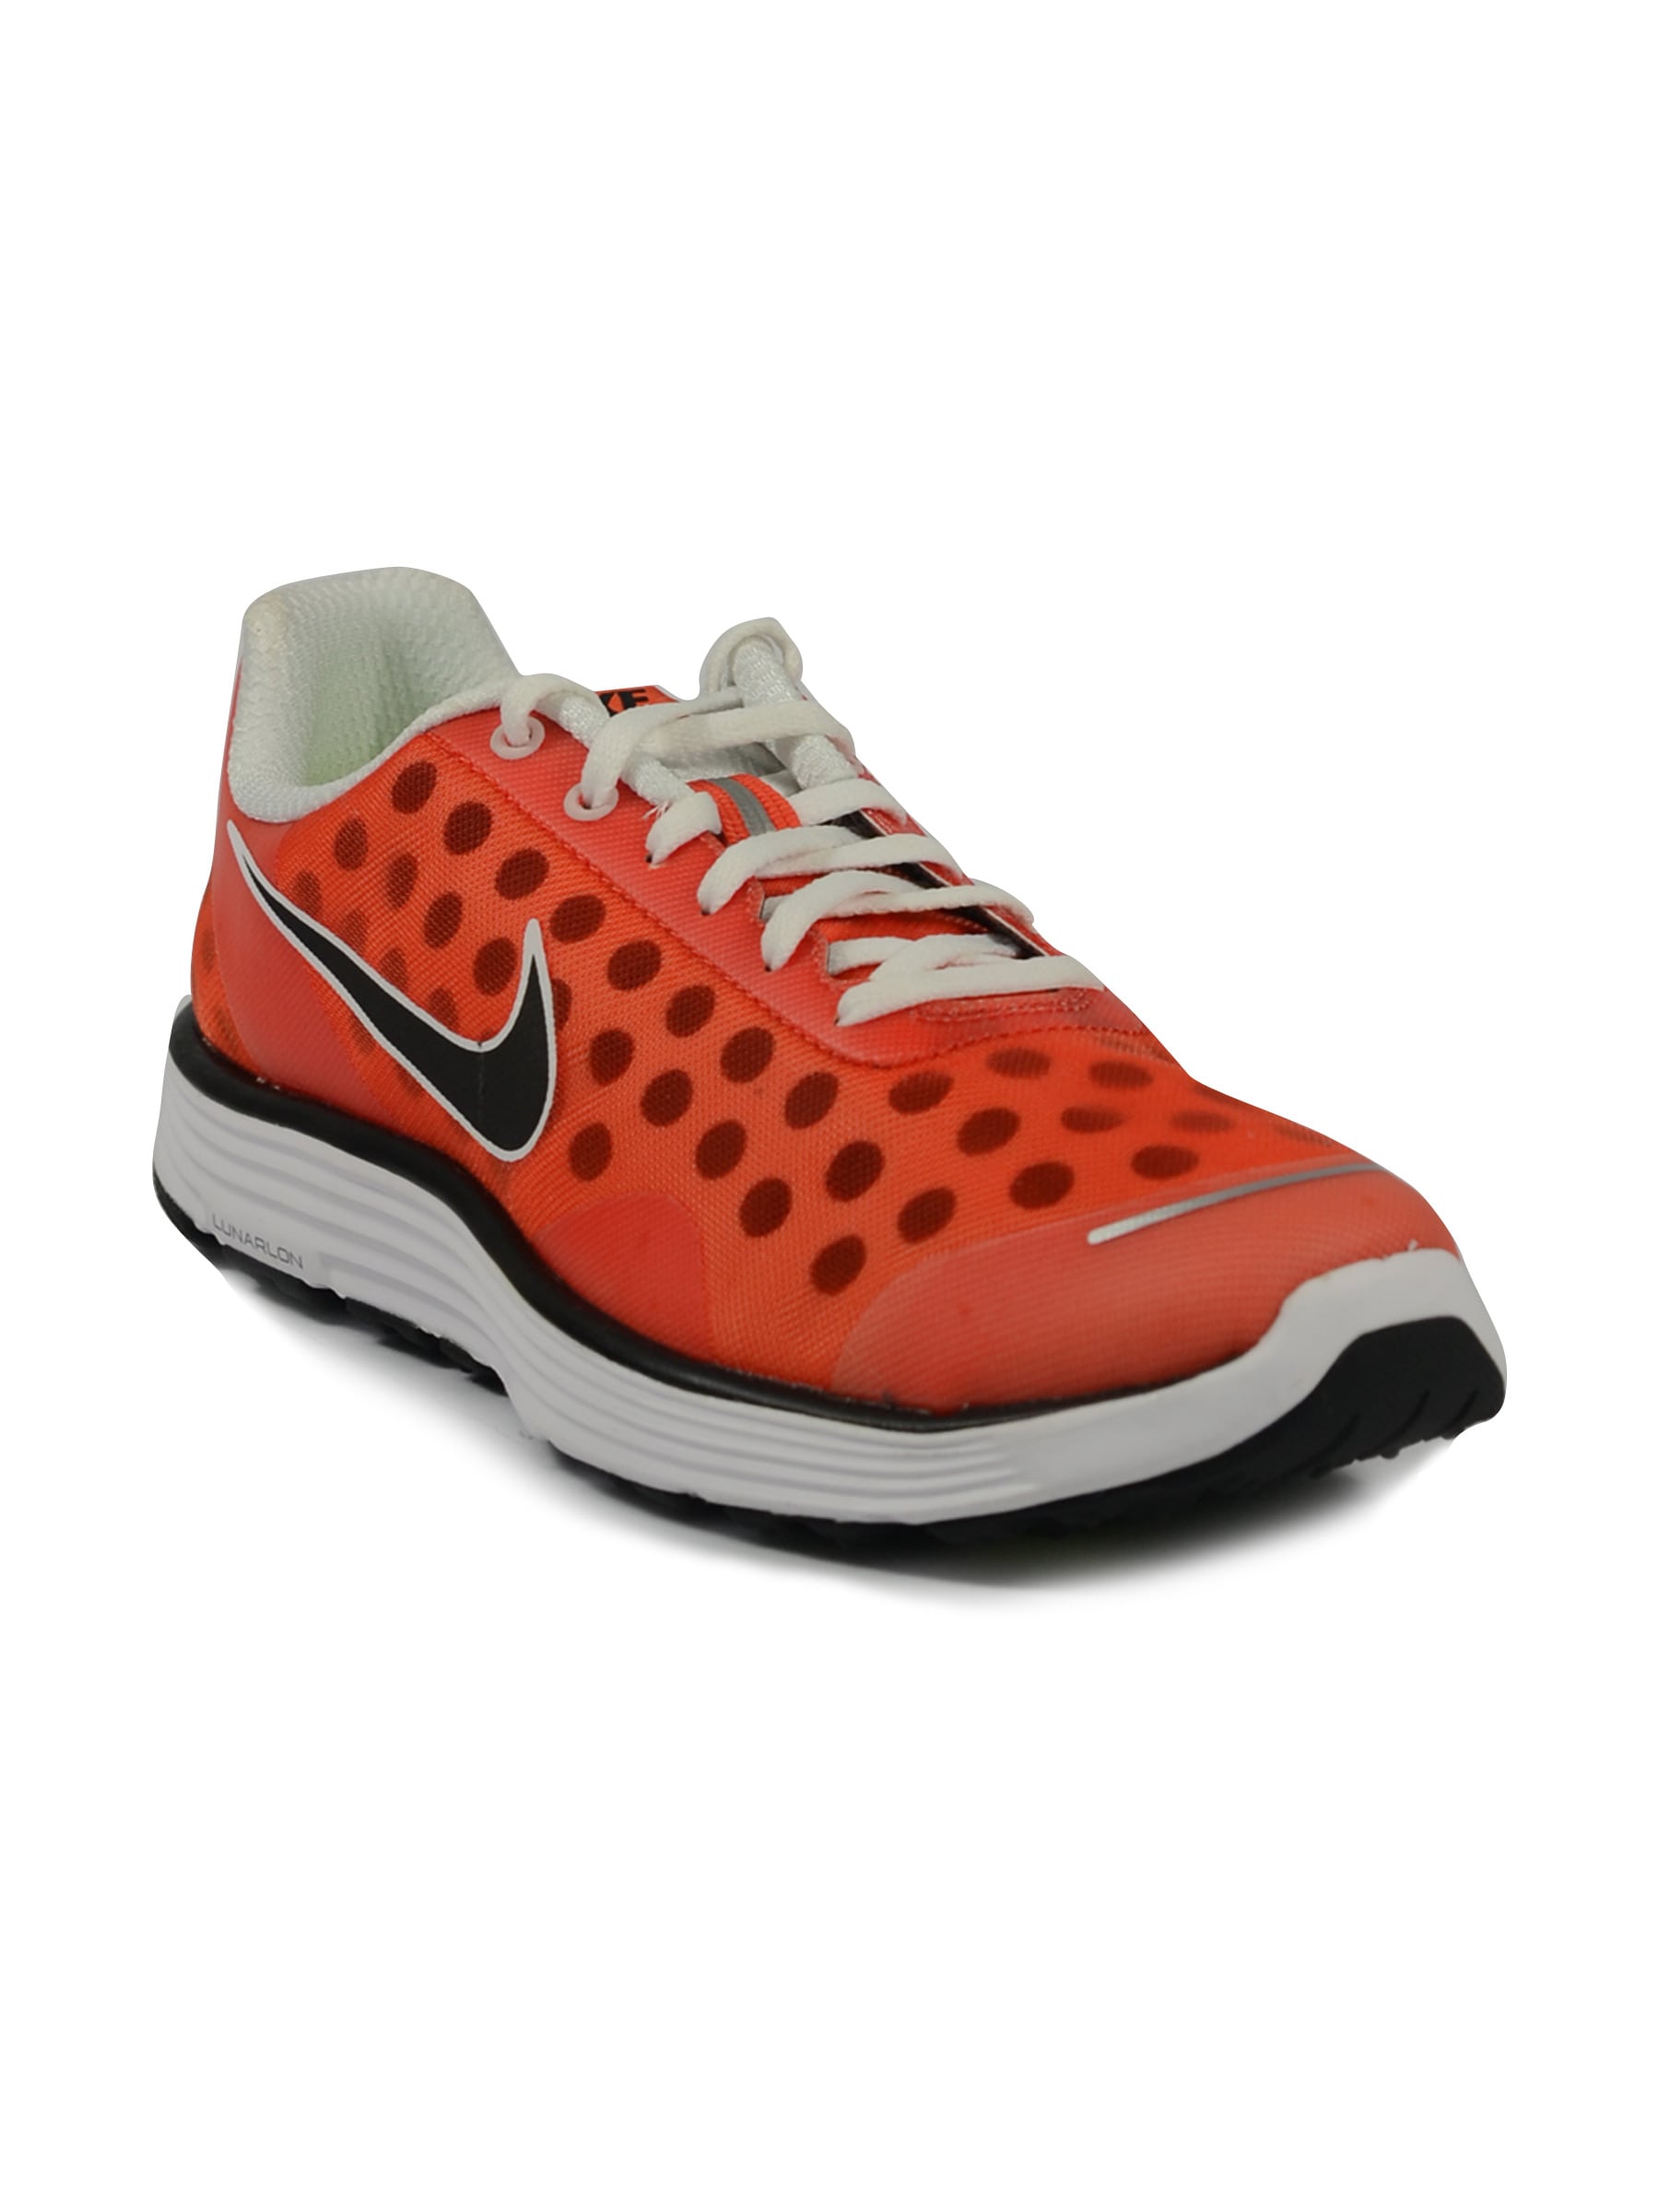 Nike Men Lunarswi +2 Orange Black Shoe